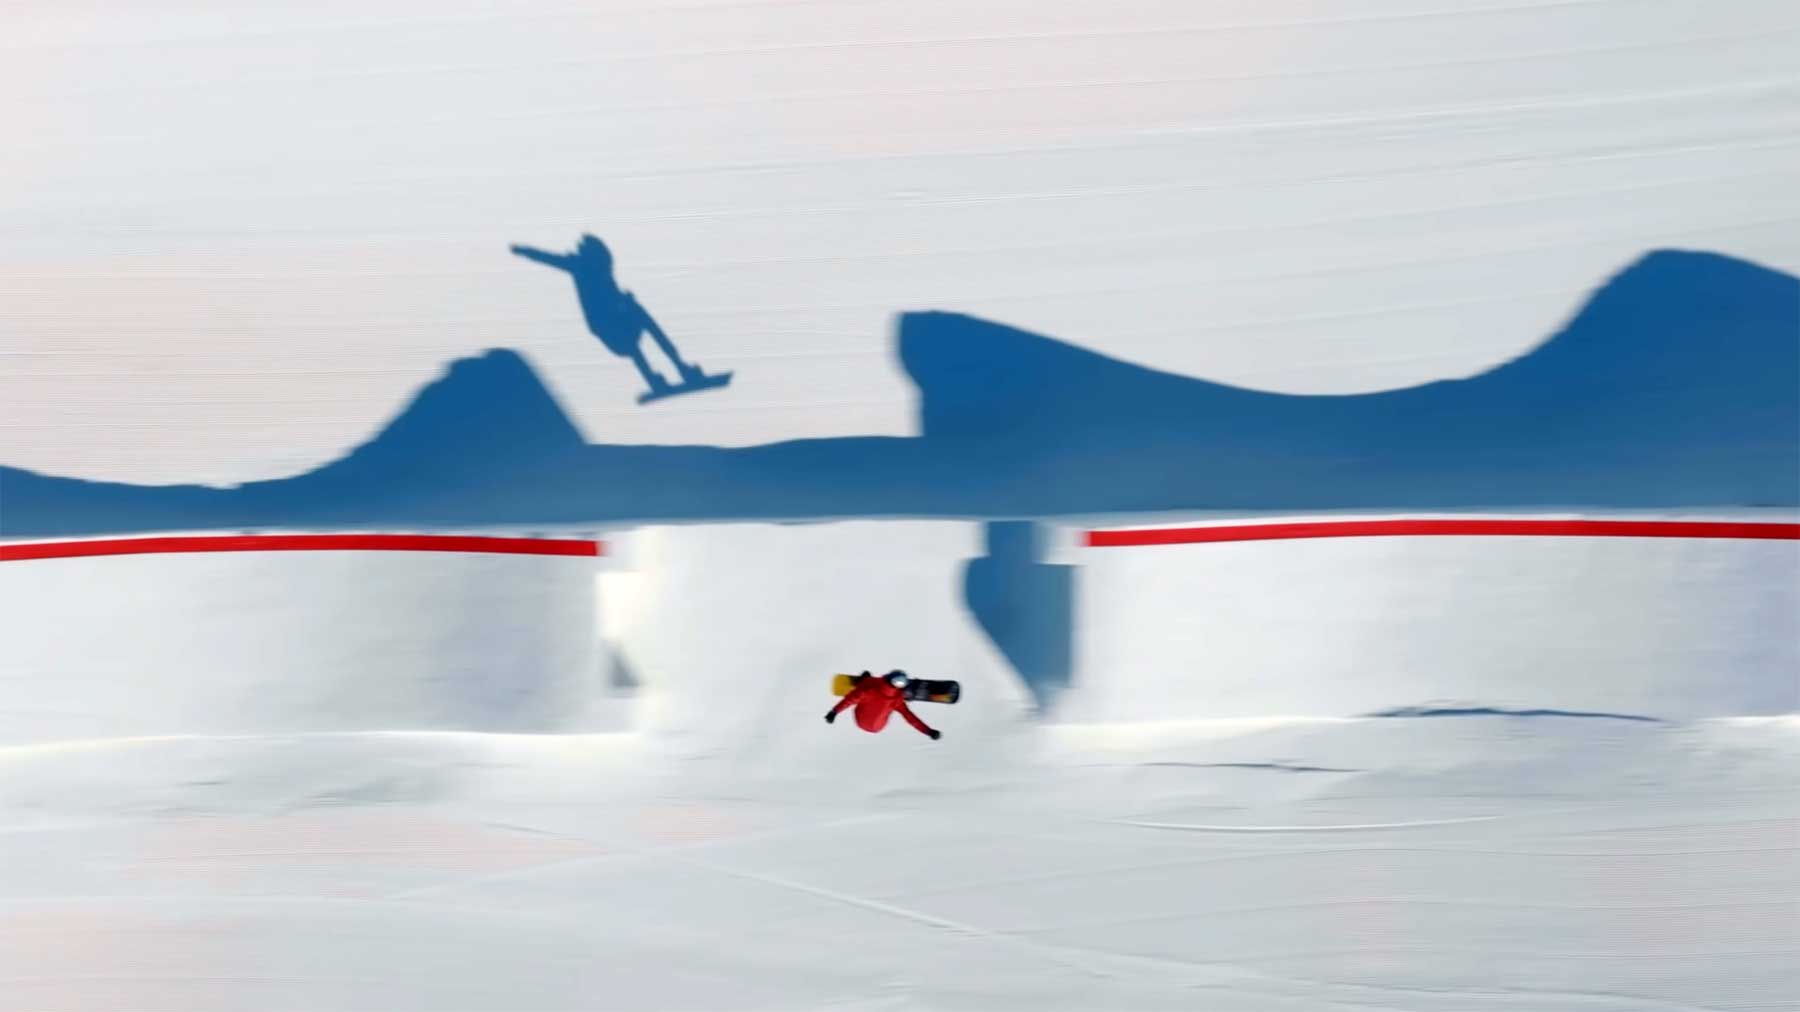 Pierre Vaultier auf der perfekten Snowboard-Bahn Snowboarding-reshapes-red-bull 